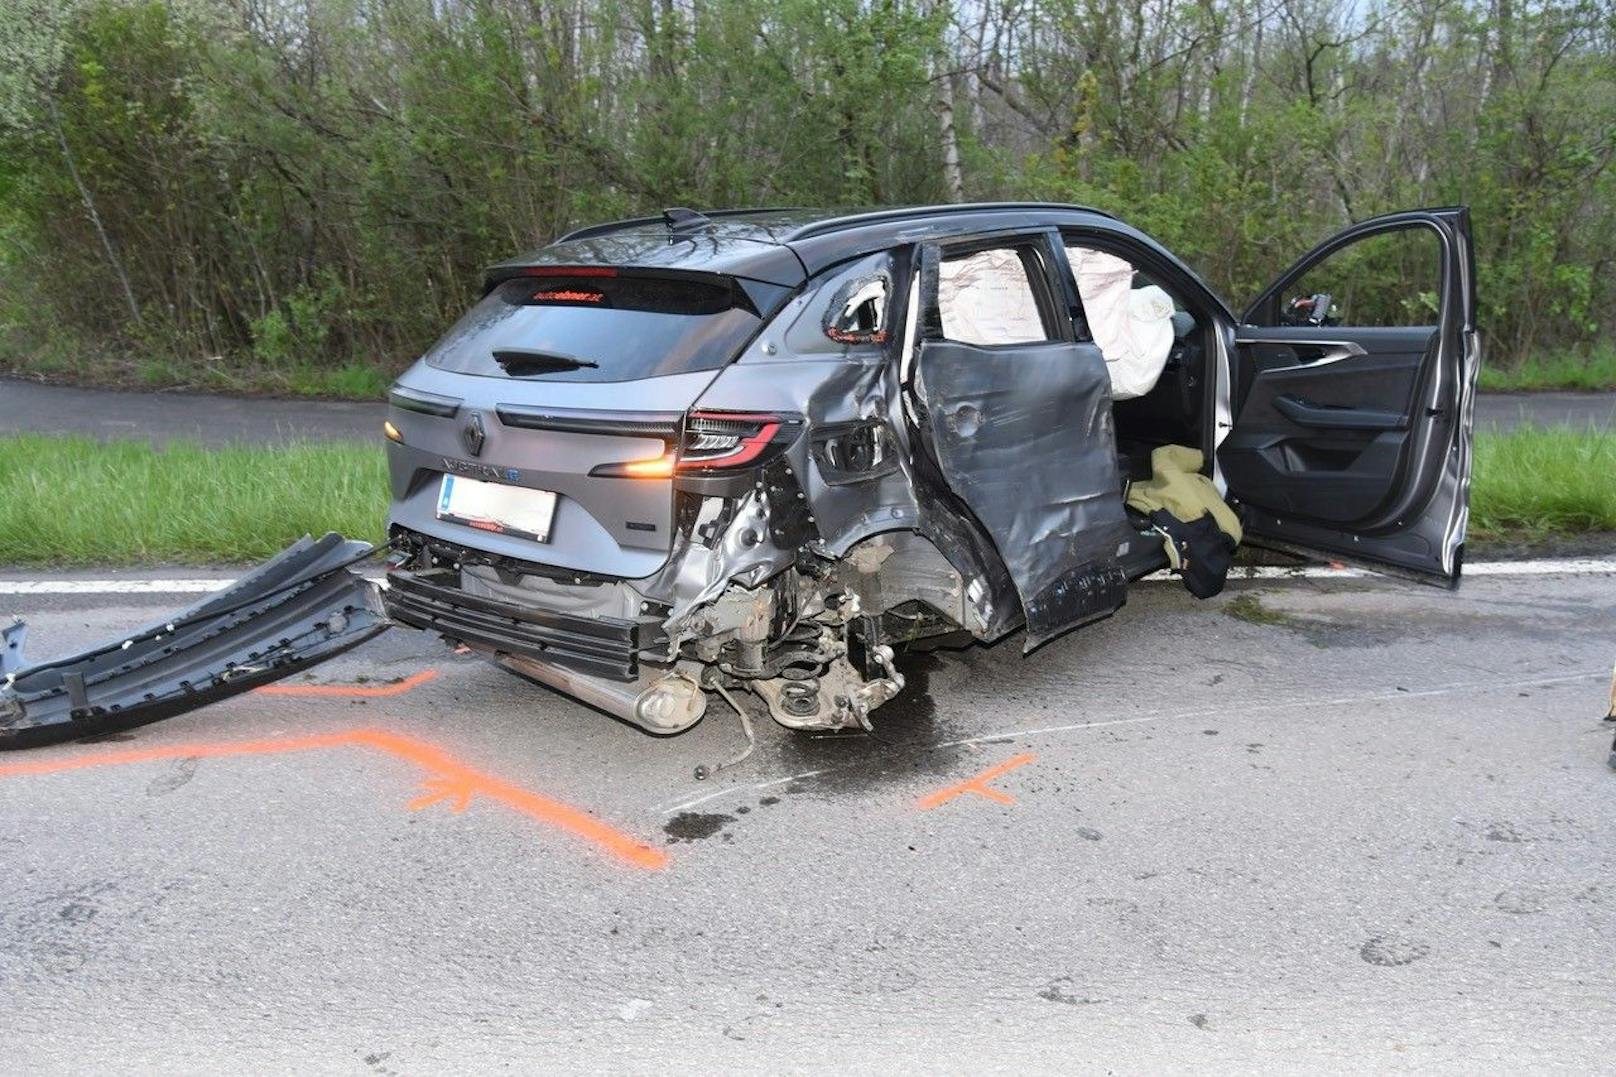 Autofahrer lässt Verletzte nach Crash in Wrack zurück